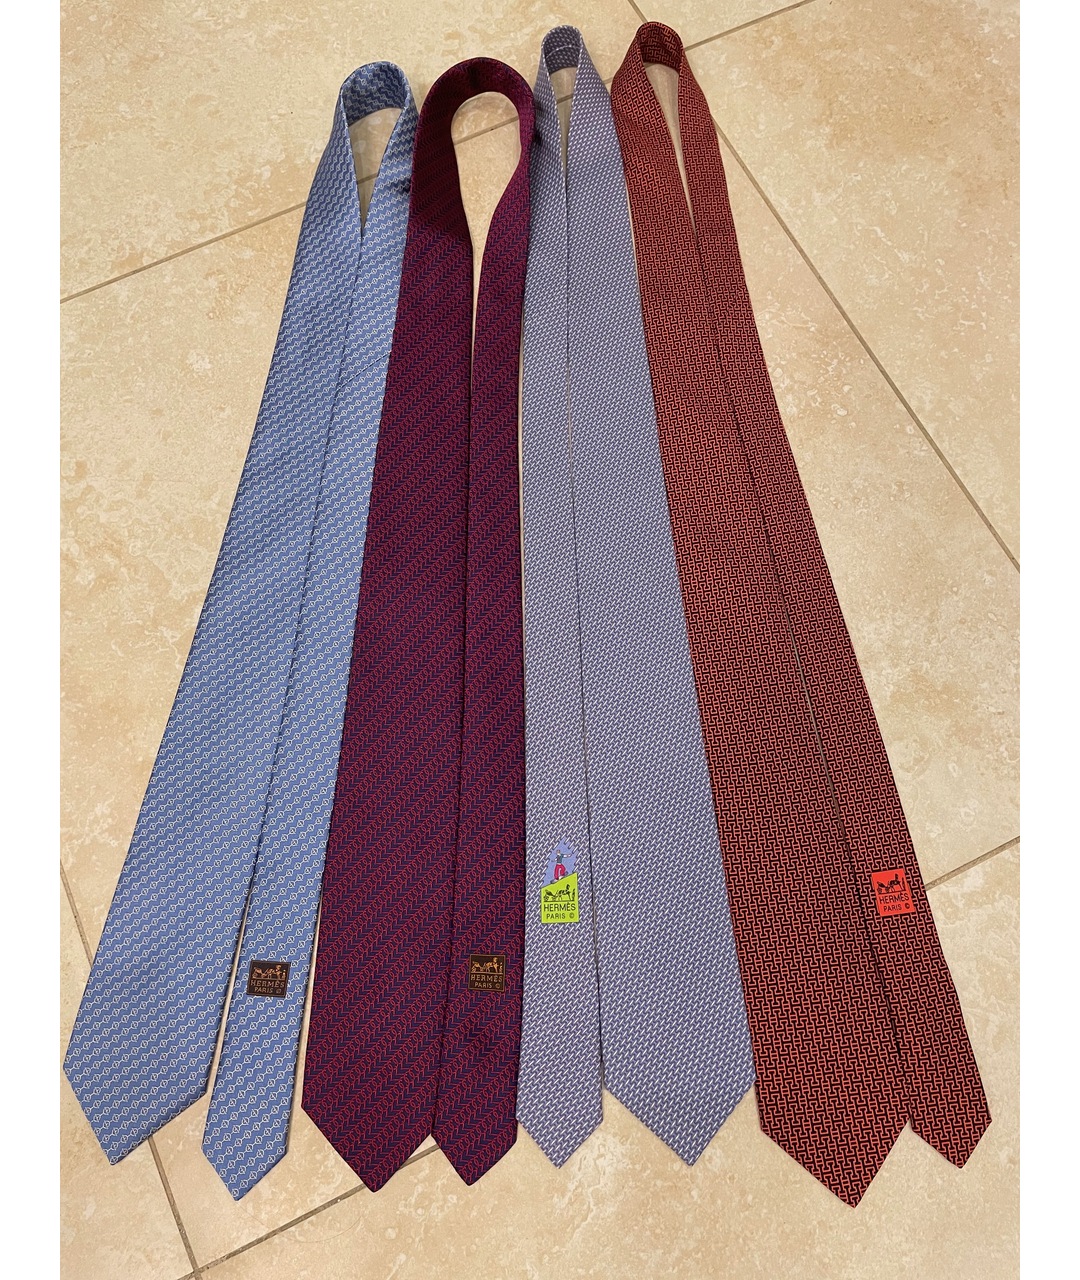 HERMES PRE-OWNED Шелковый галстук, фото 2